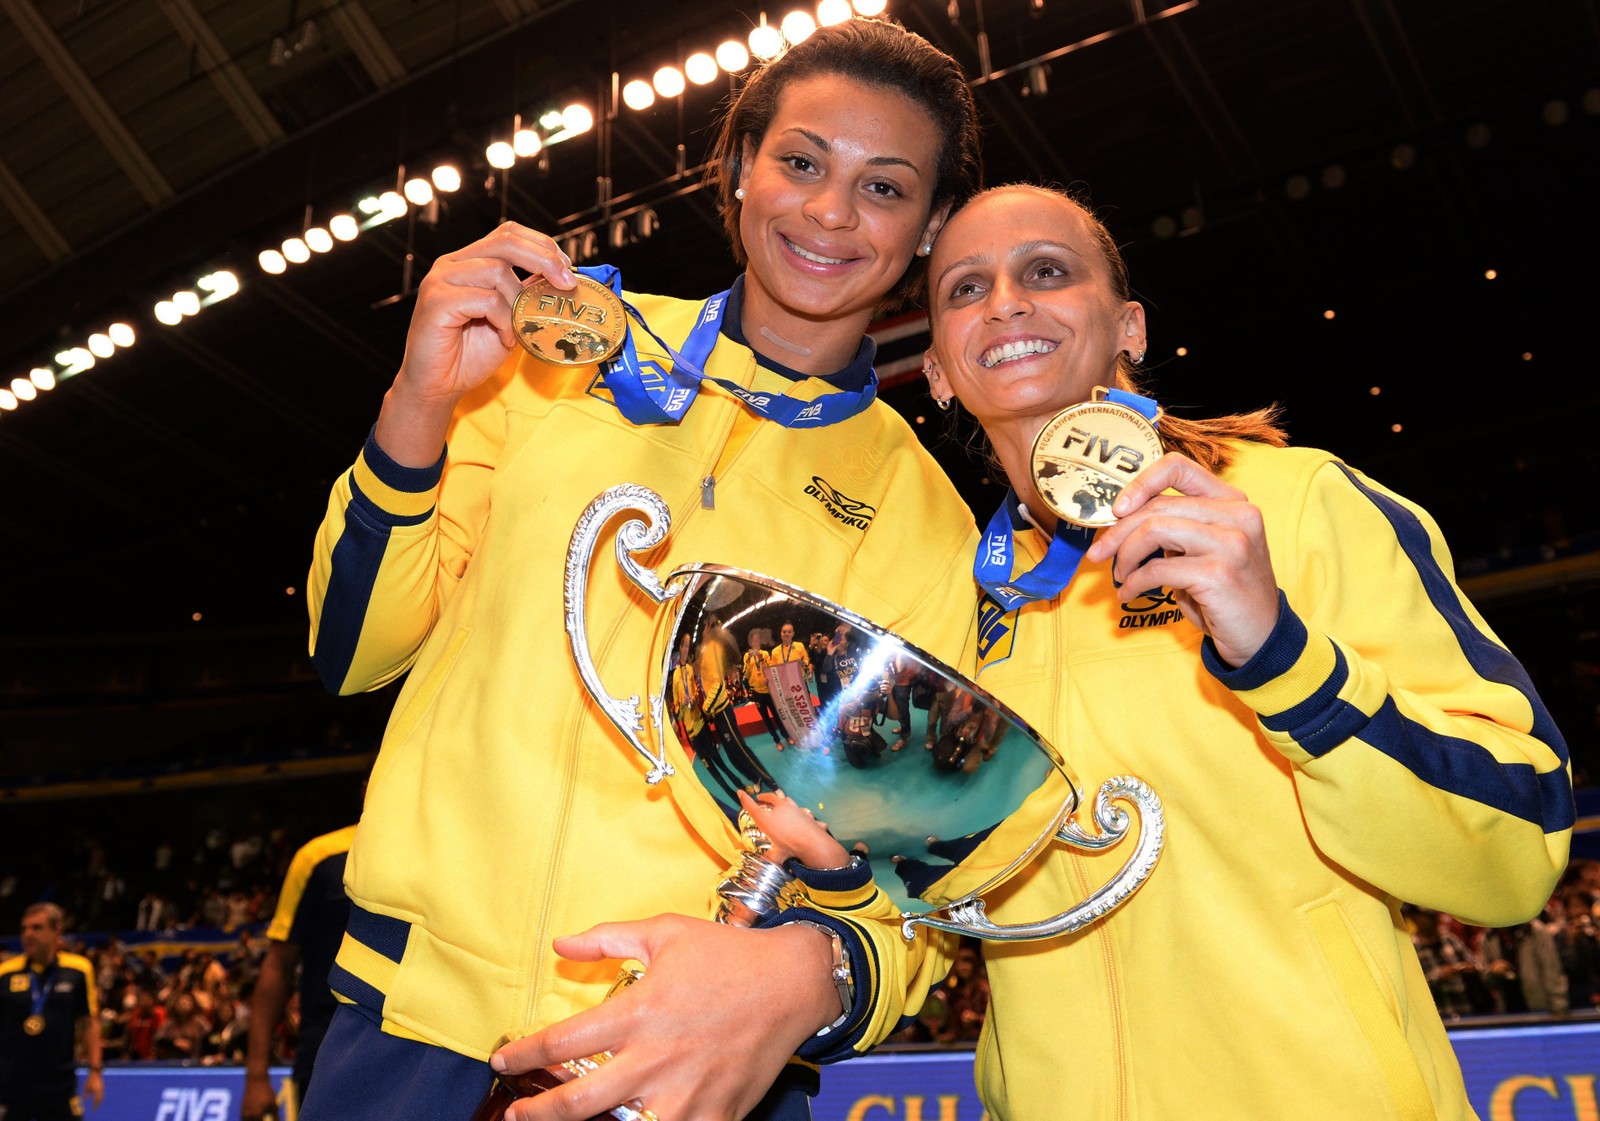 Walewska Oliveira (E) segura o troféu da vitória com Fabiana Oliveira (R) durante a cerimônia de premiação da Copa dos Grandes Campeões Femininos de vôlei da FIVB, em Tóquio em 2013 — Foto: TOSHIFUMI KITAMURA/AFP